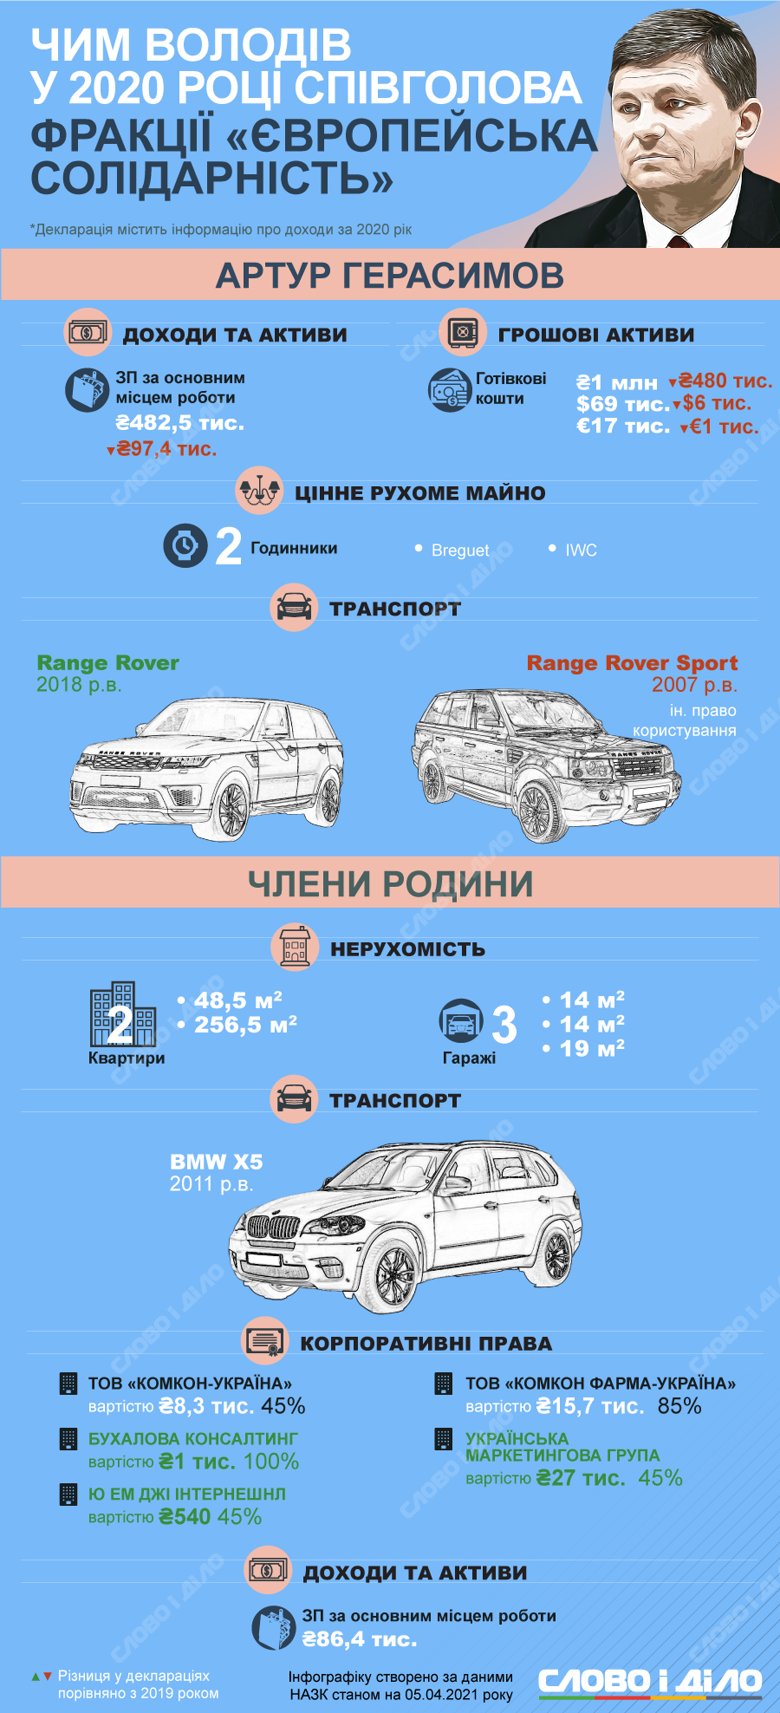 Нардеп Артур Герасимов задекларировал зарплату, наличные средства и автомобиль Range Rover.